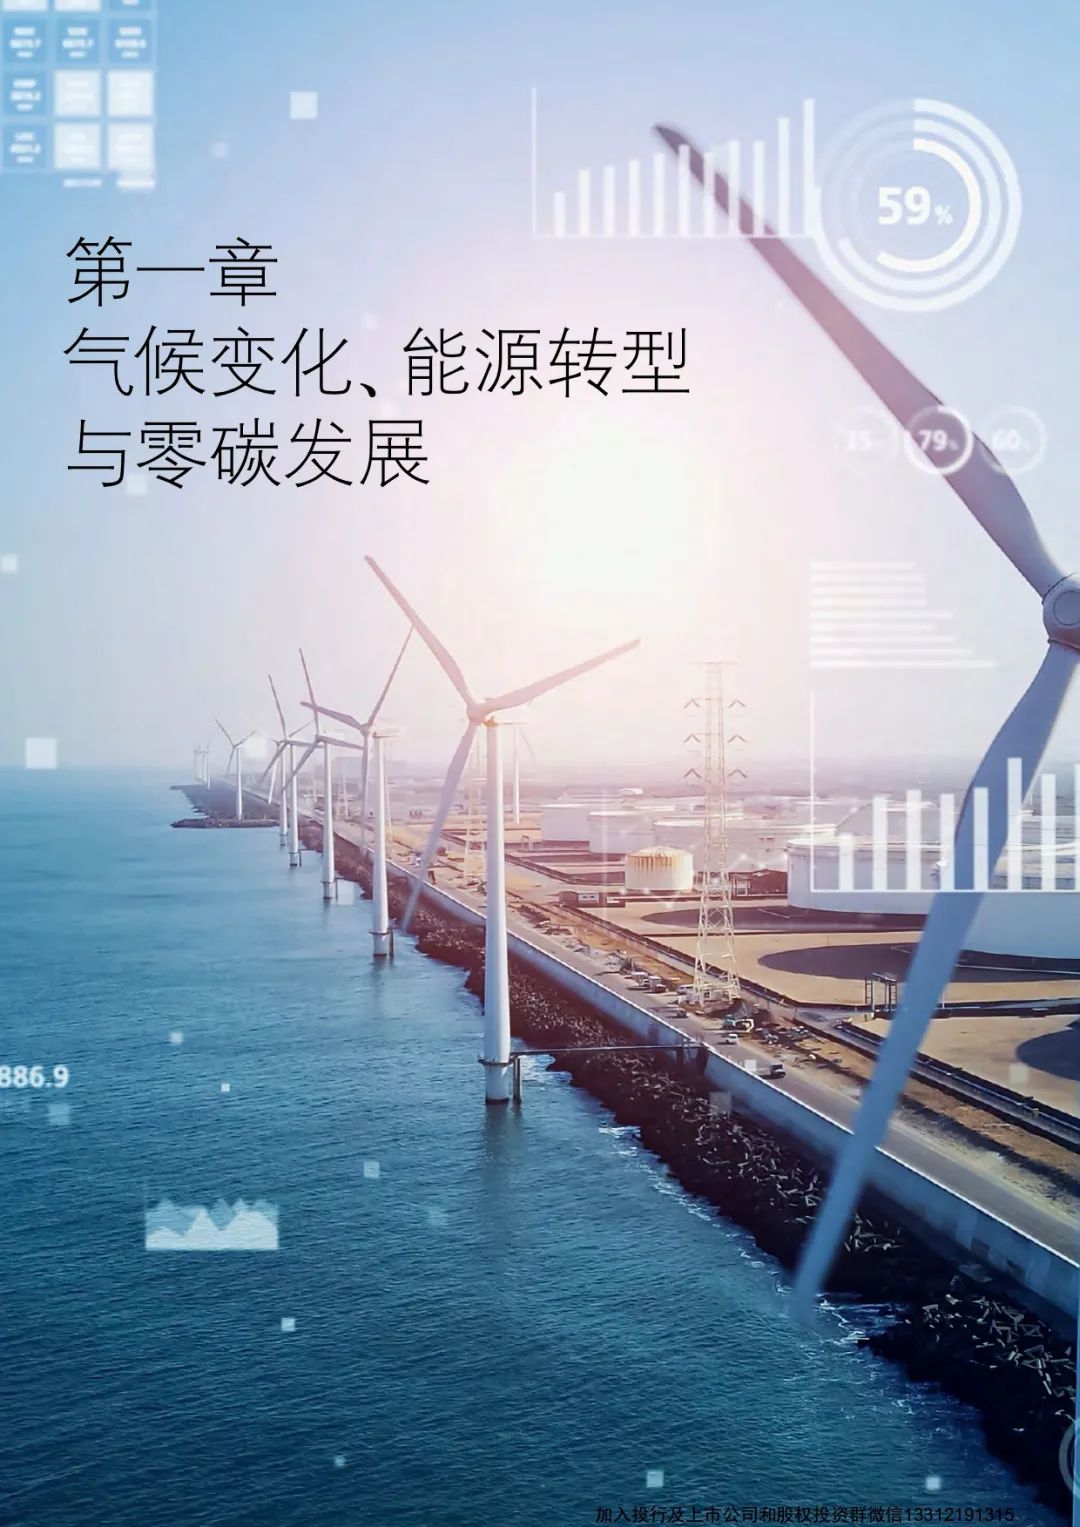 华为与德勤(中国)联合编写《全球能源转型及零碳发展白皮书 》